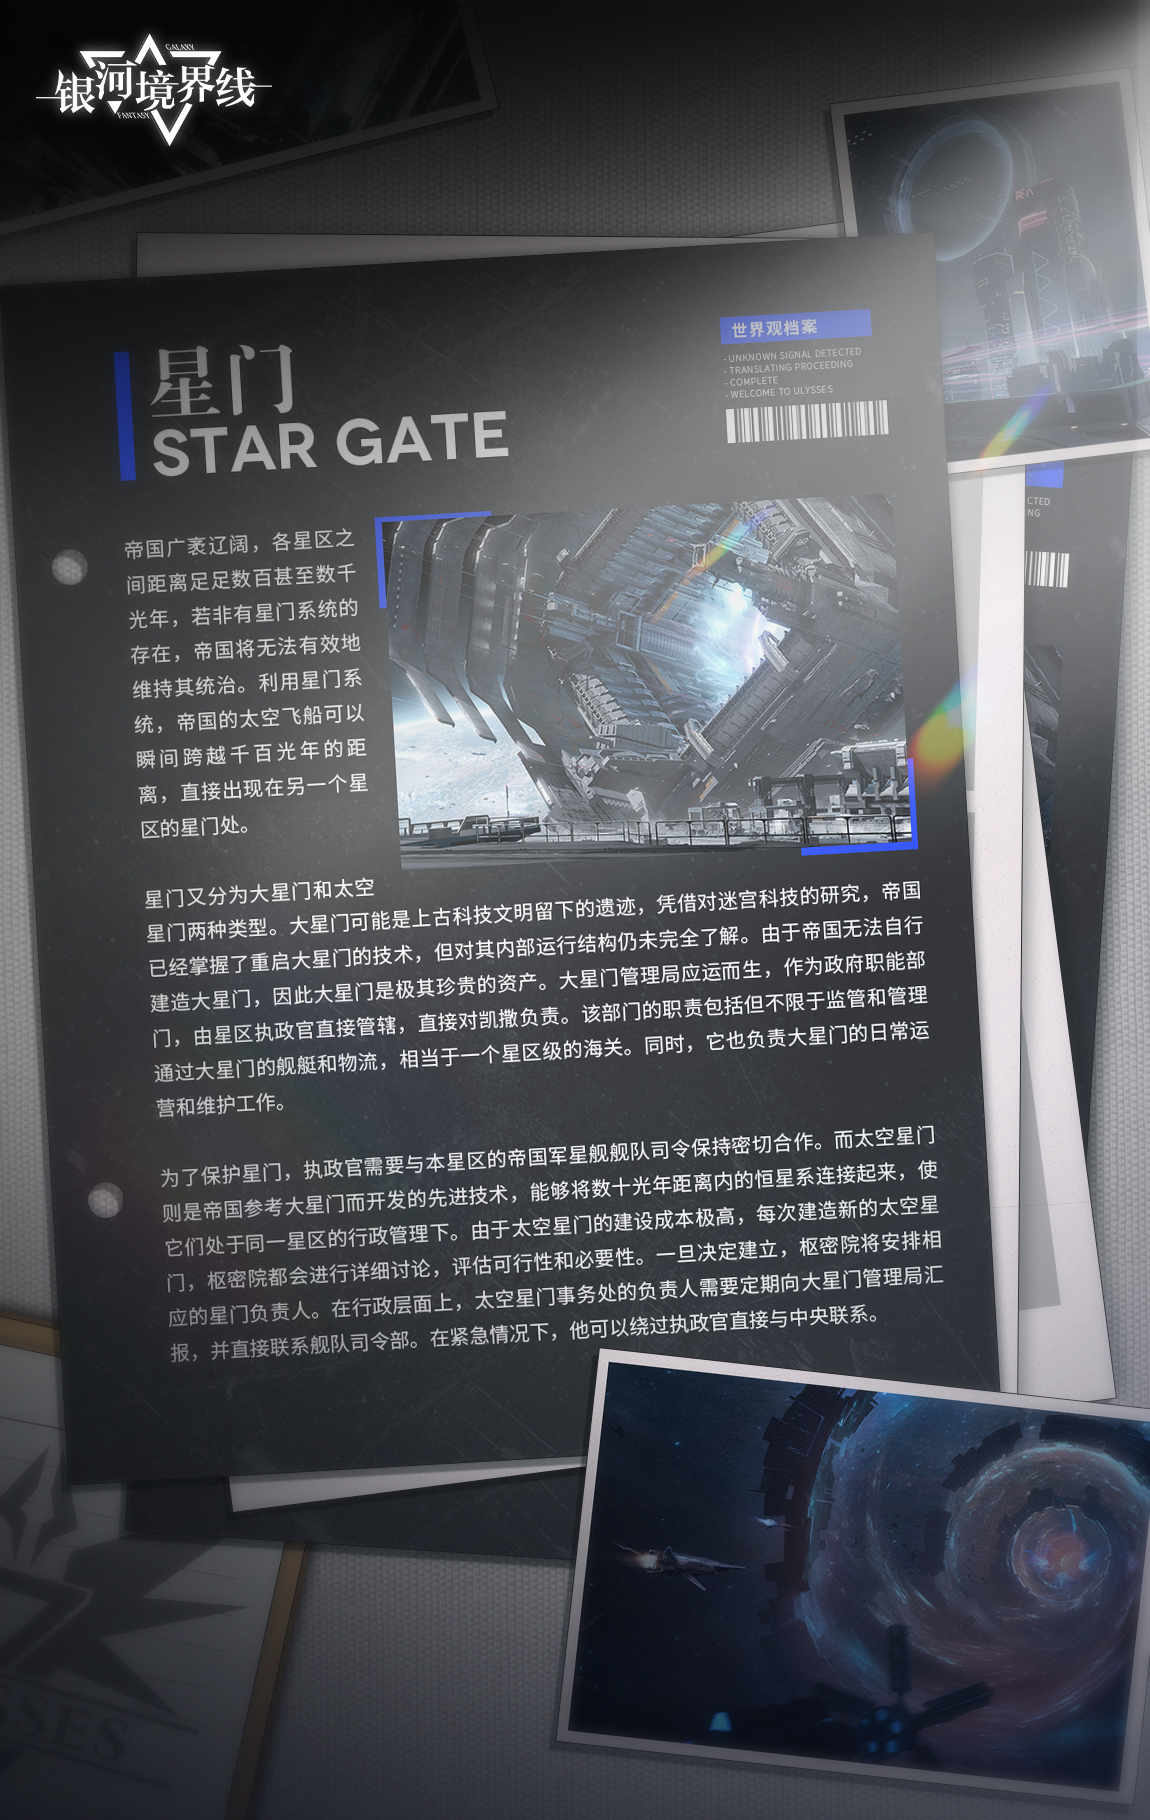 【世界观档案】星门 | Star Gate